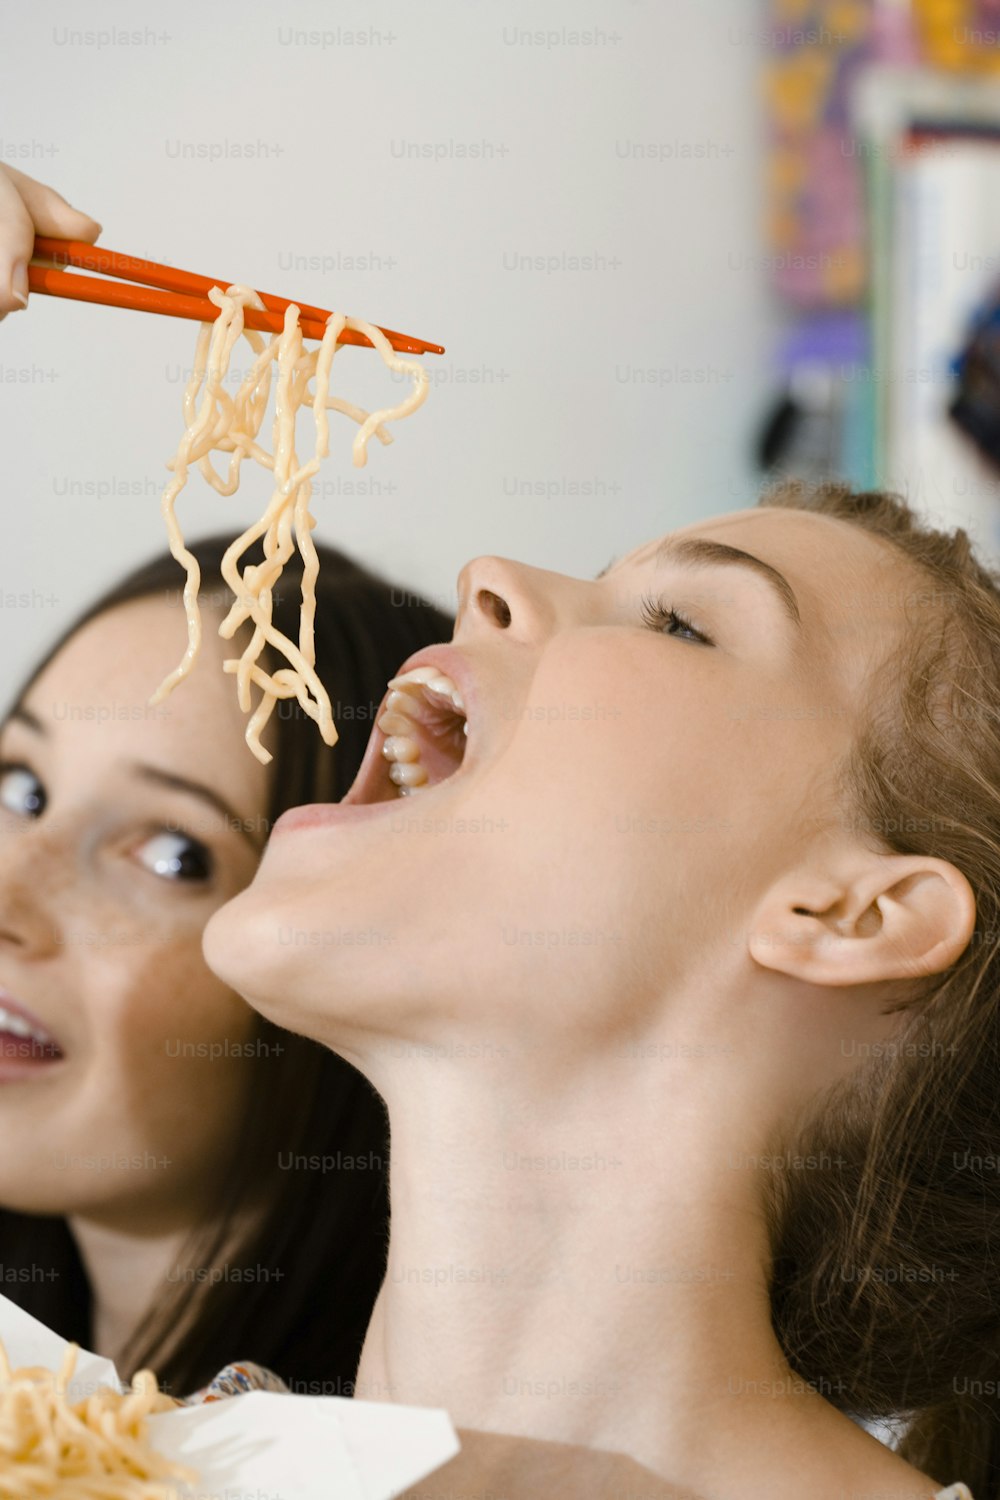 une femme mangeant des nouilles avec des baguettes pendant qu’une autre femme regarde